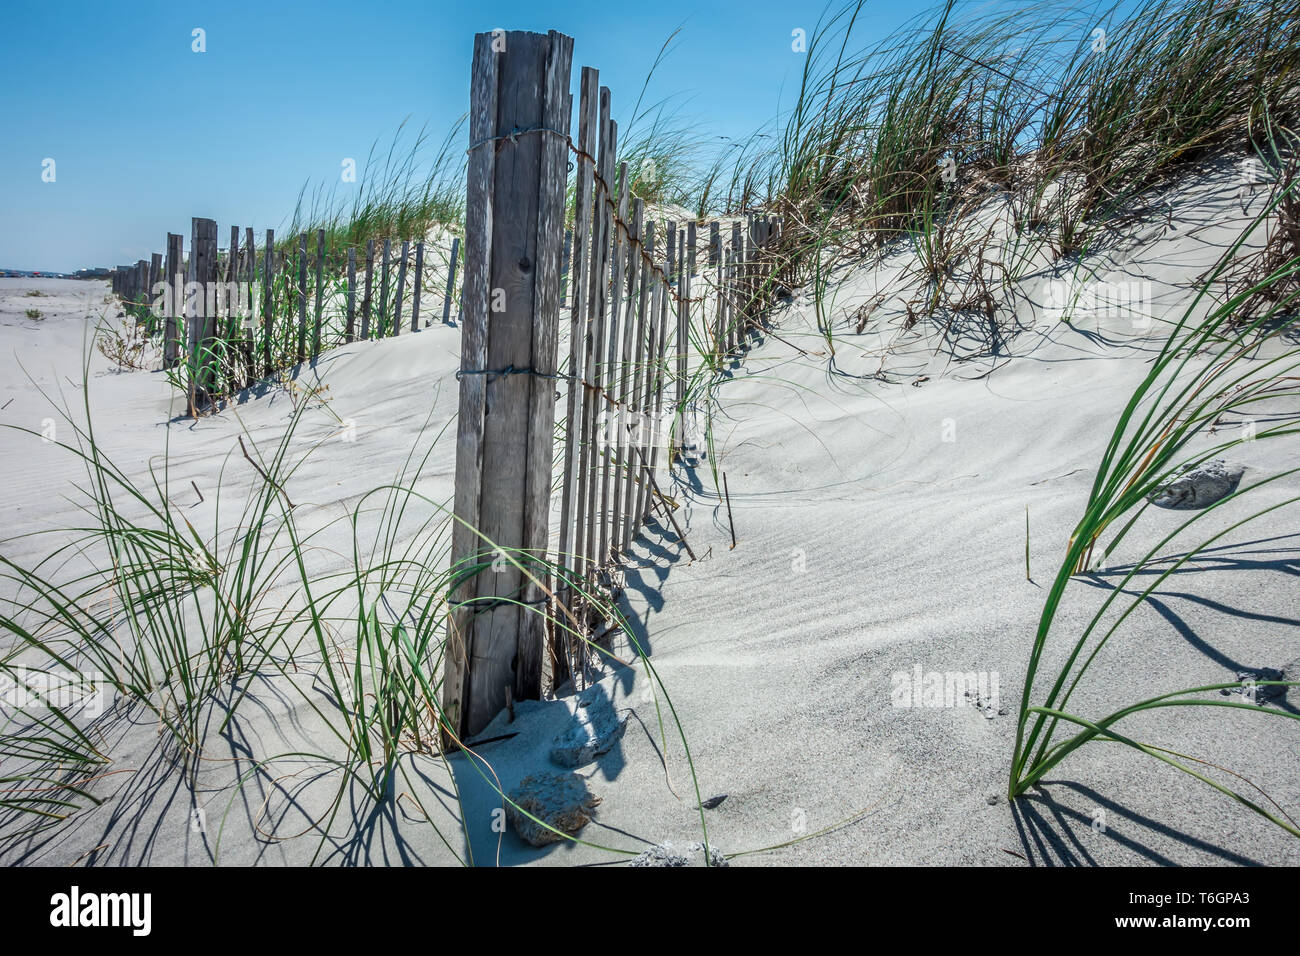 Grassy ventoso dune di sabbia sulla spiaggia Foto Stock